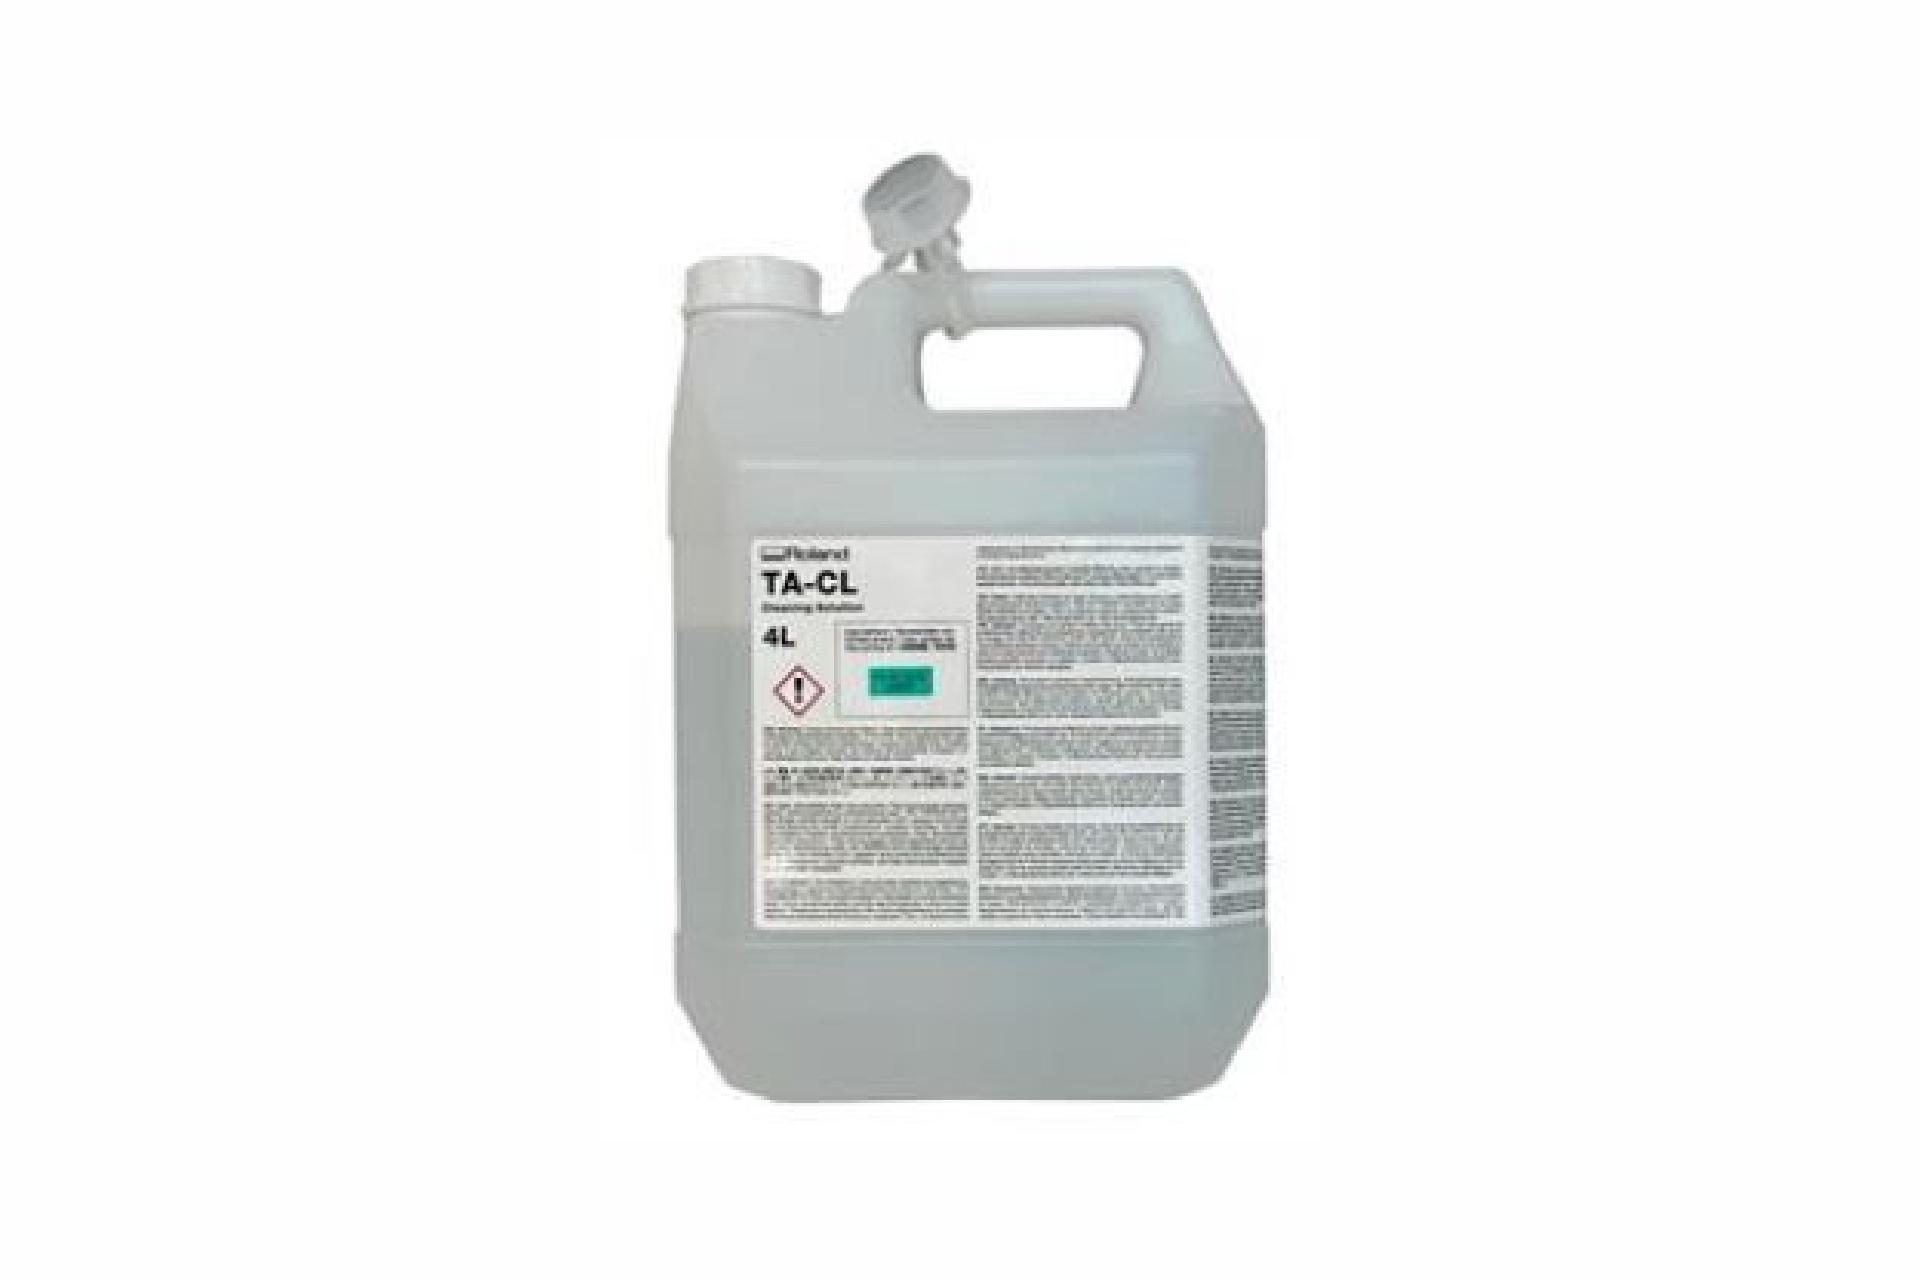 Foto: Roland TA-CL Cleaning liquid - 4000 ml.